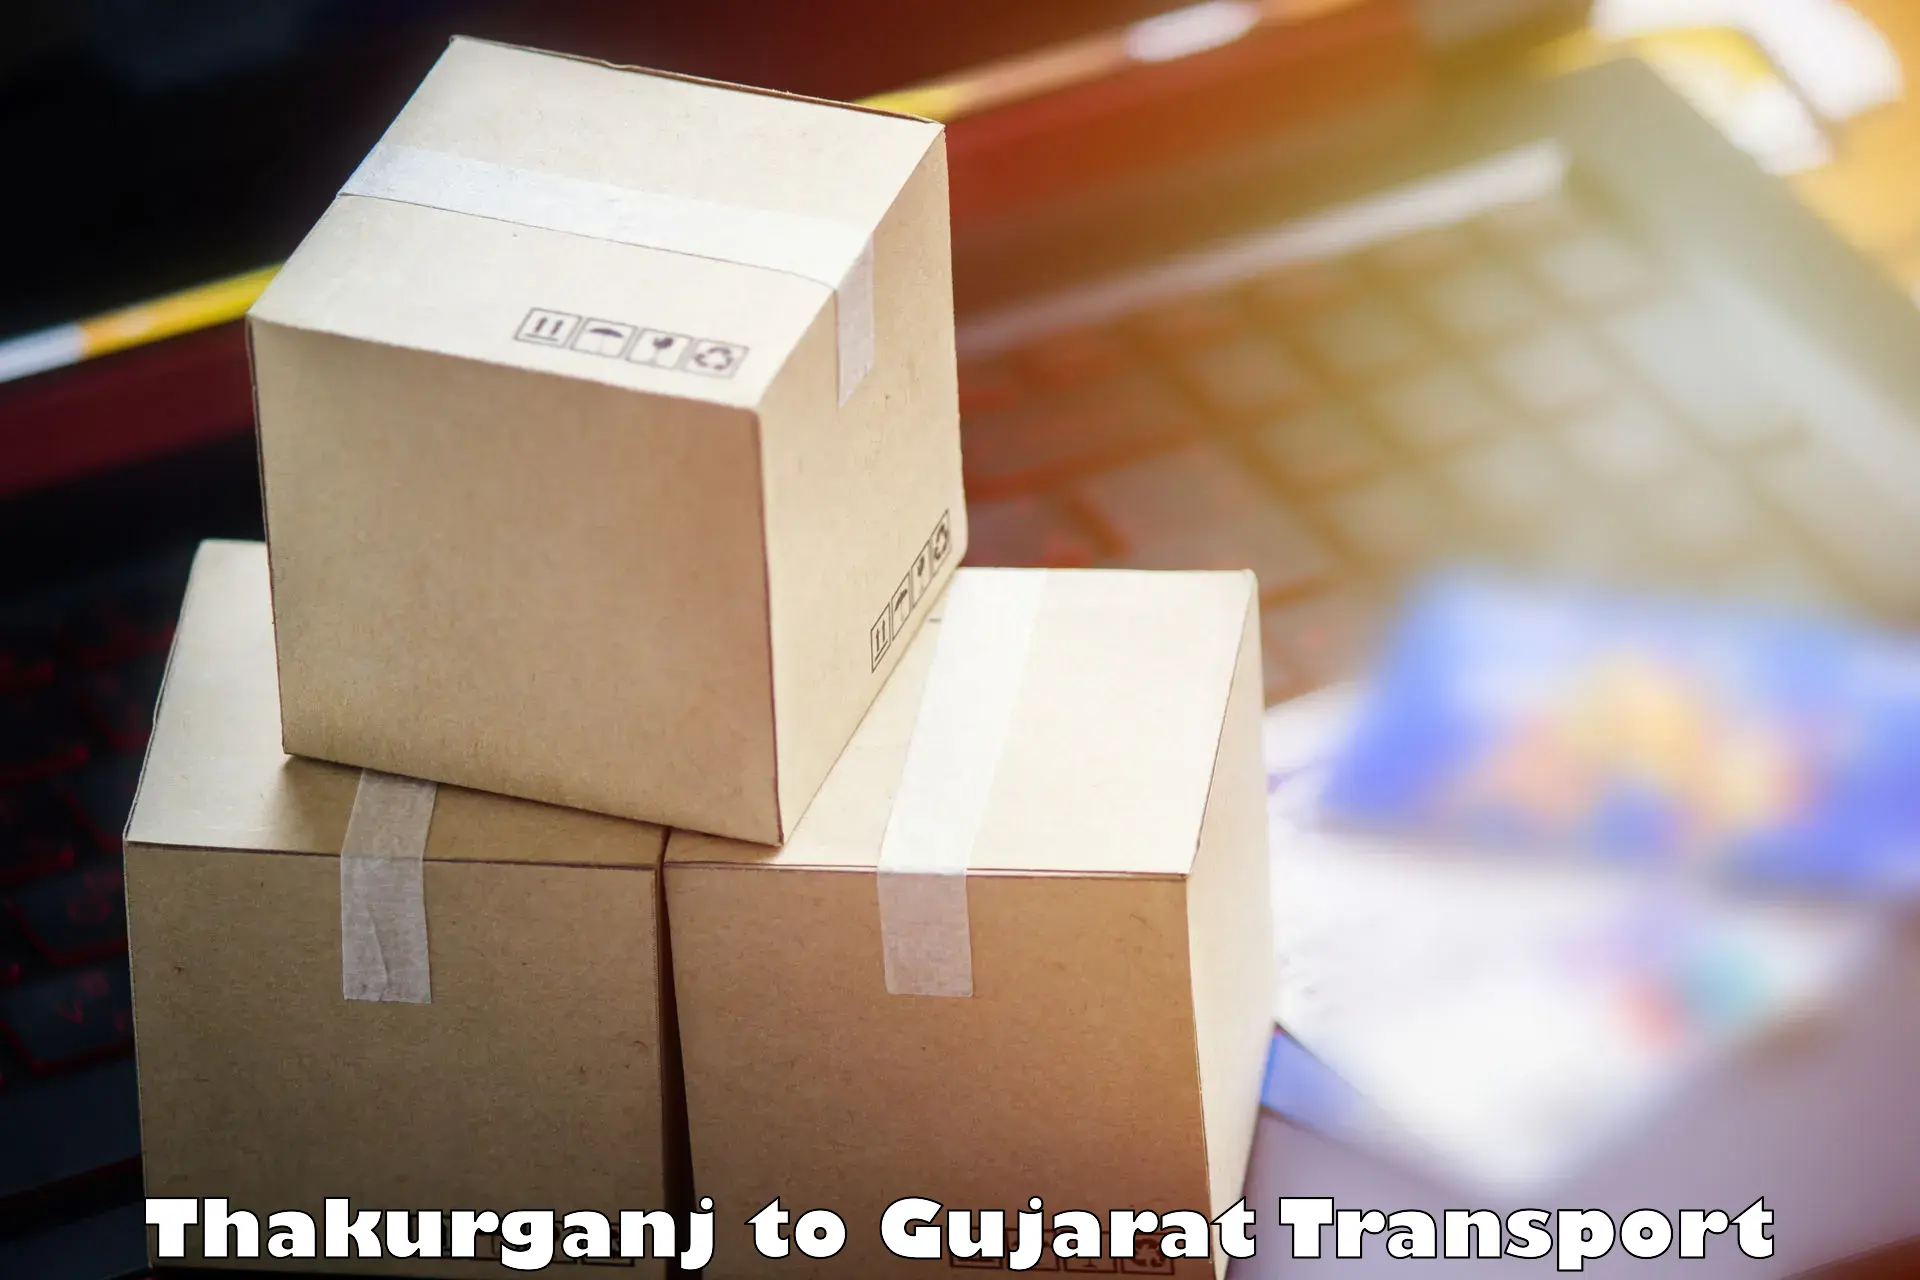 Cargo transportation services Thakurganj to Dhandhuka